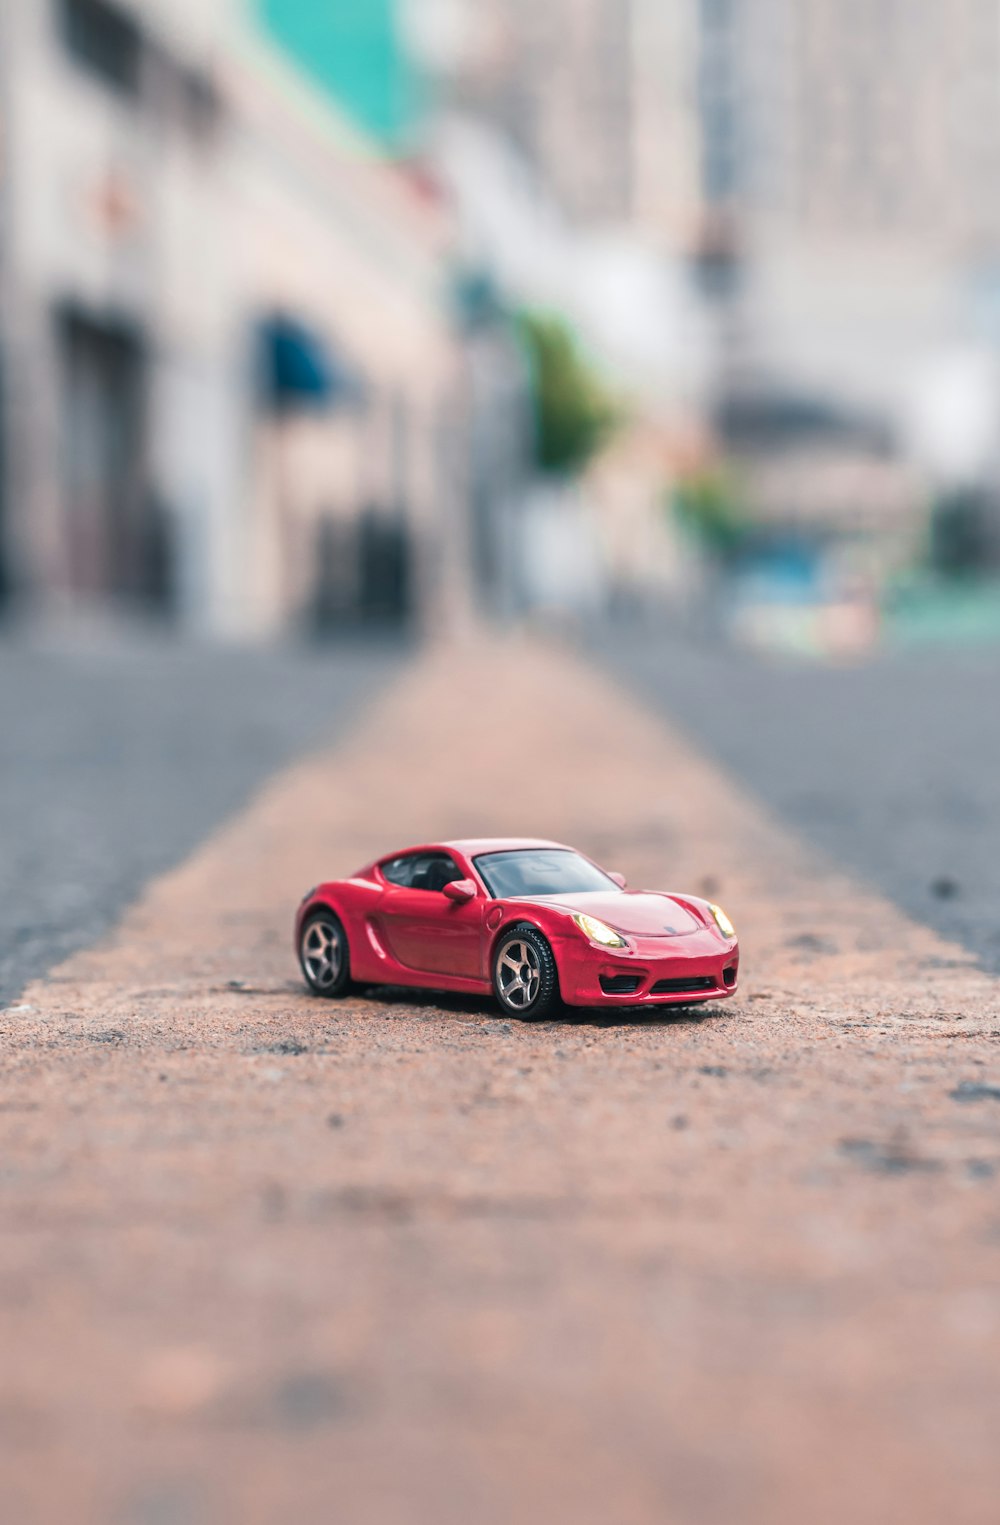 도로에서 빨간색 쿠페 축소 모델의 선택적 초점 사진